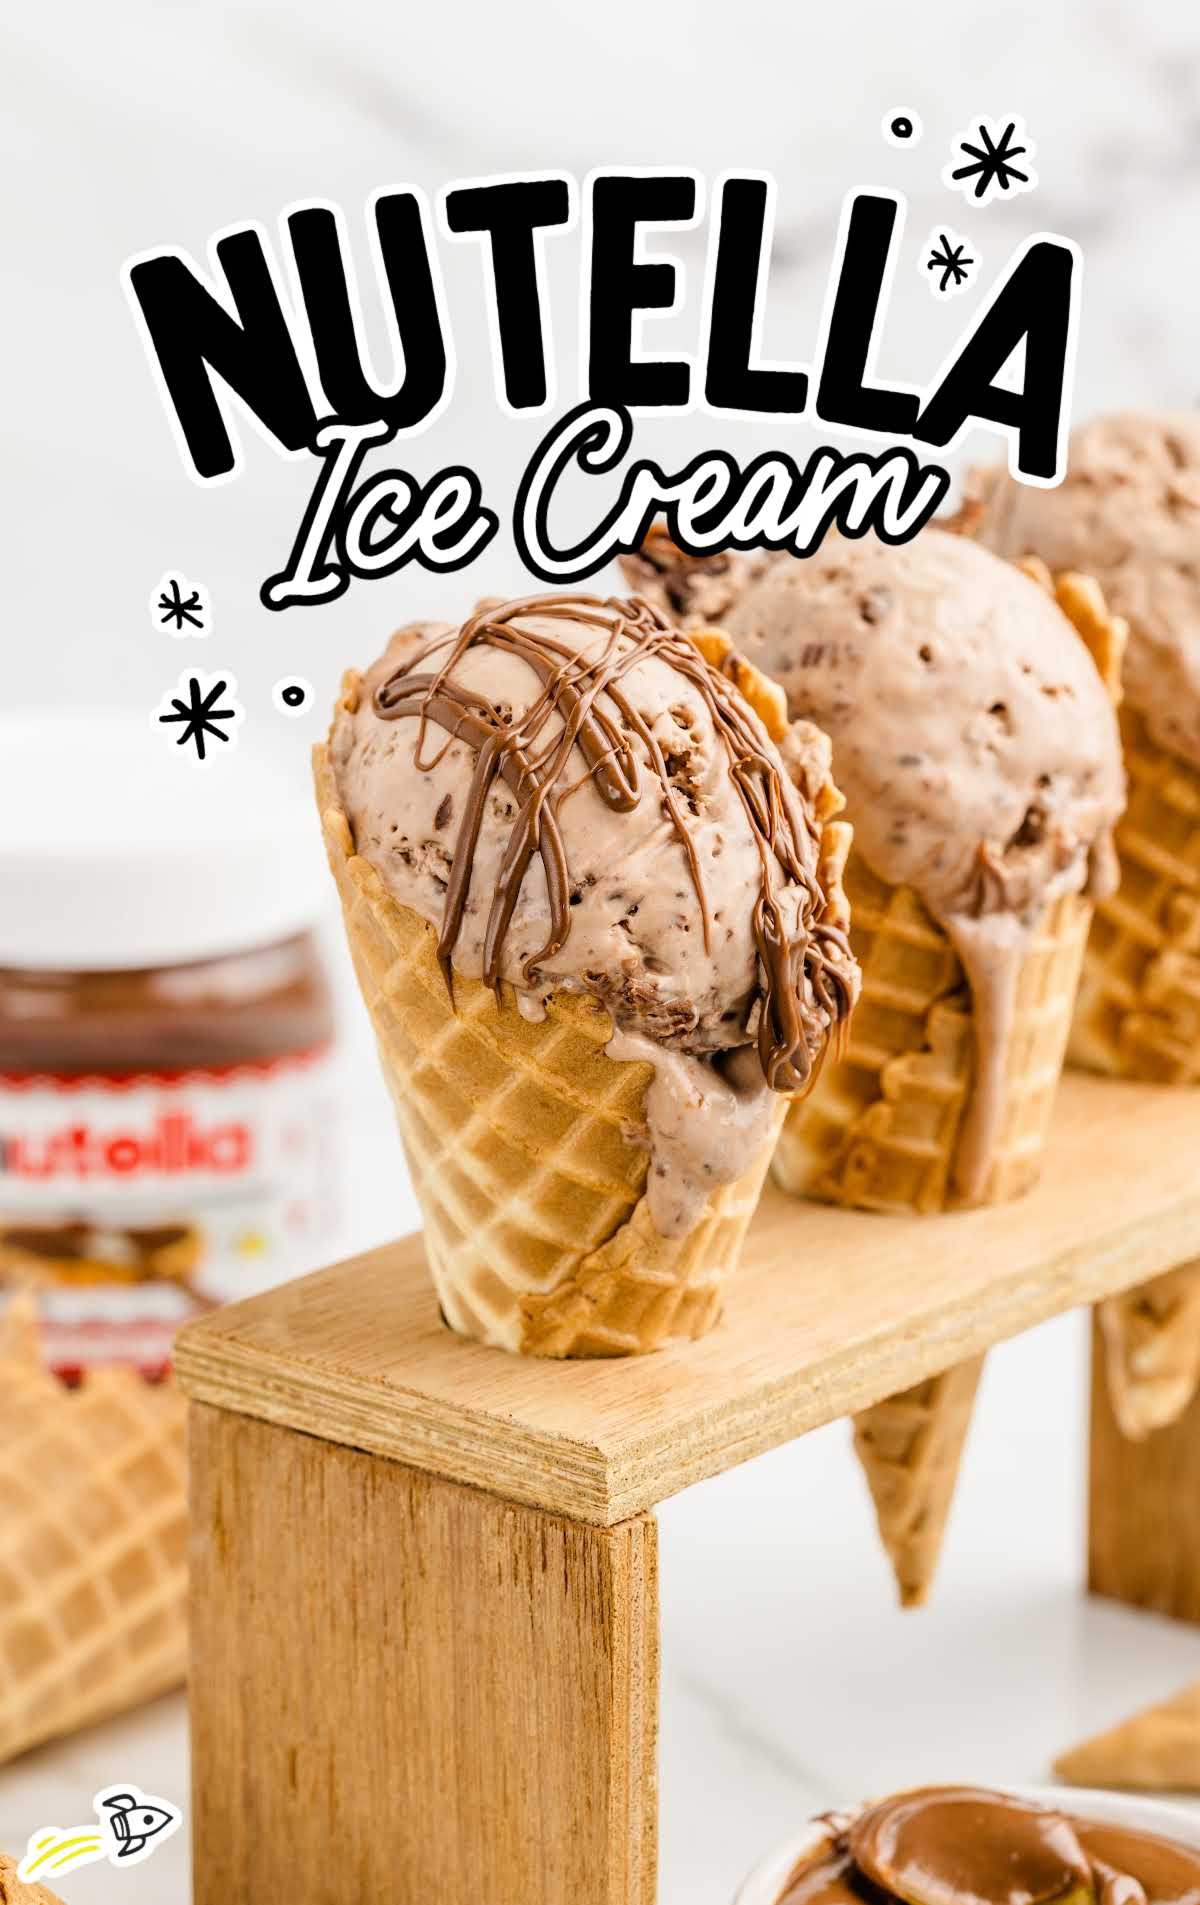 ice cream cones filled with Nutella Ice Cream